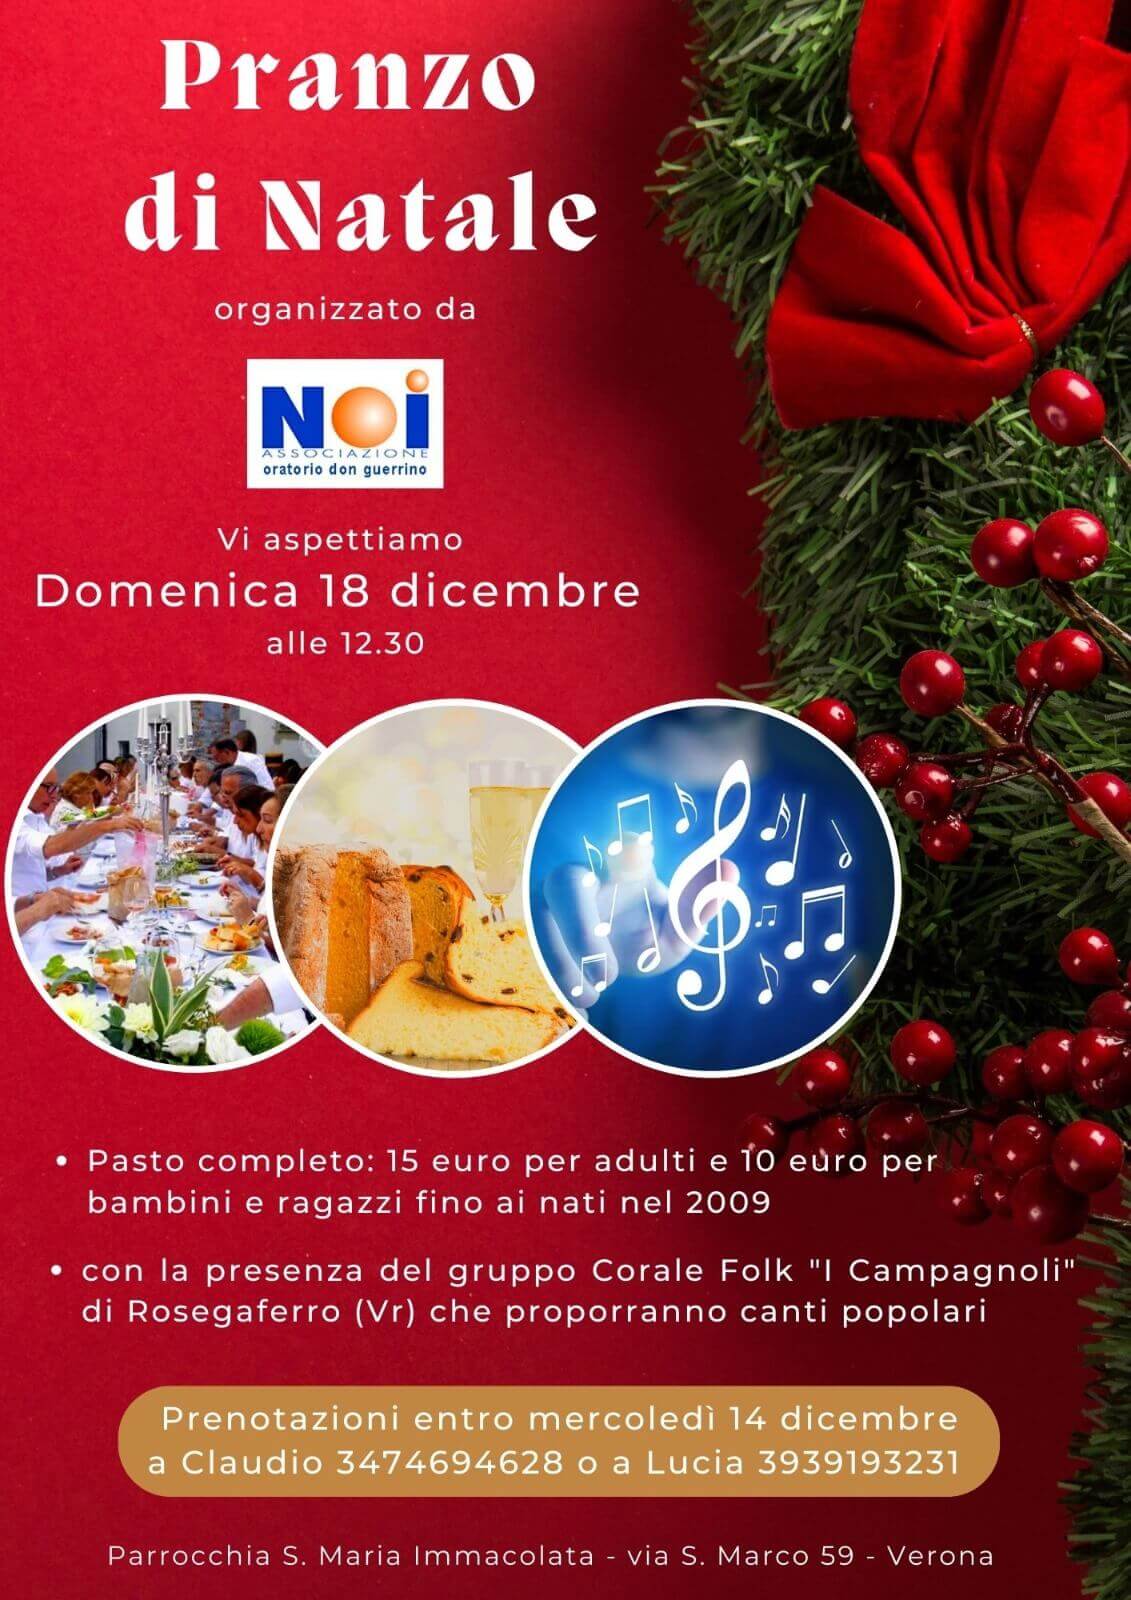 Pranzo di Natale 2022 con “I Campagnoli”